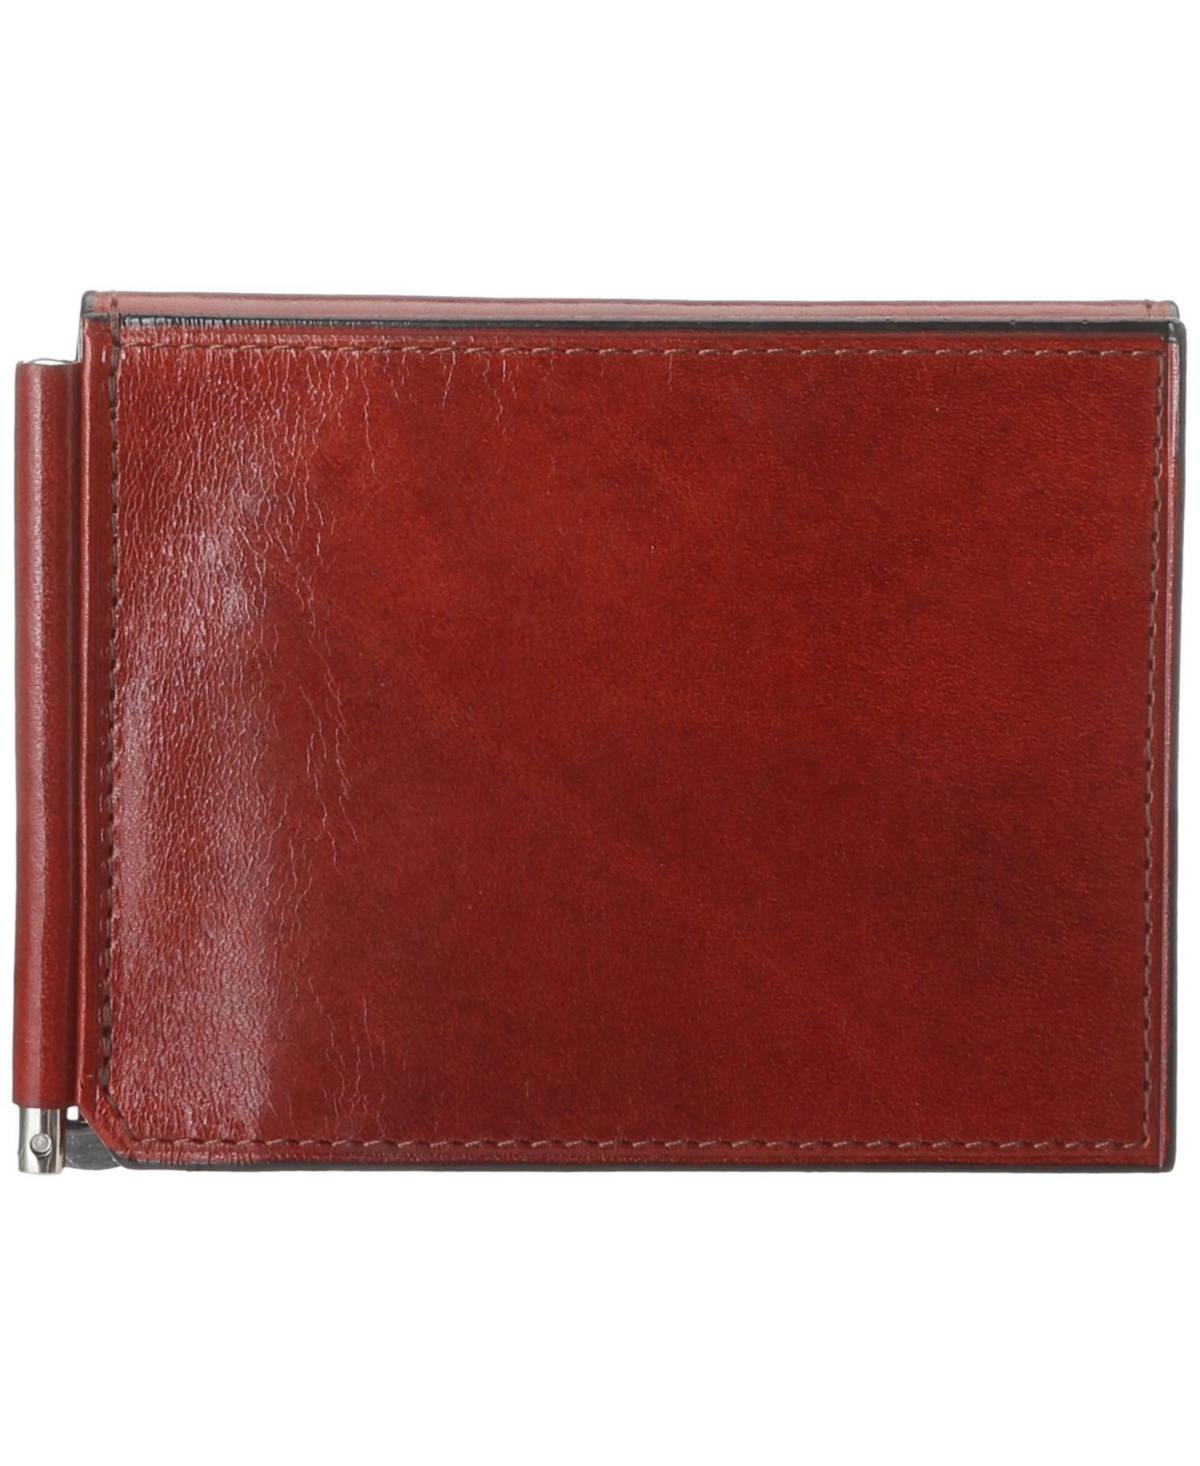 Men's Leather Money Clip with pocket - Cognac